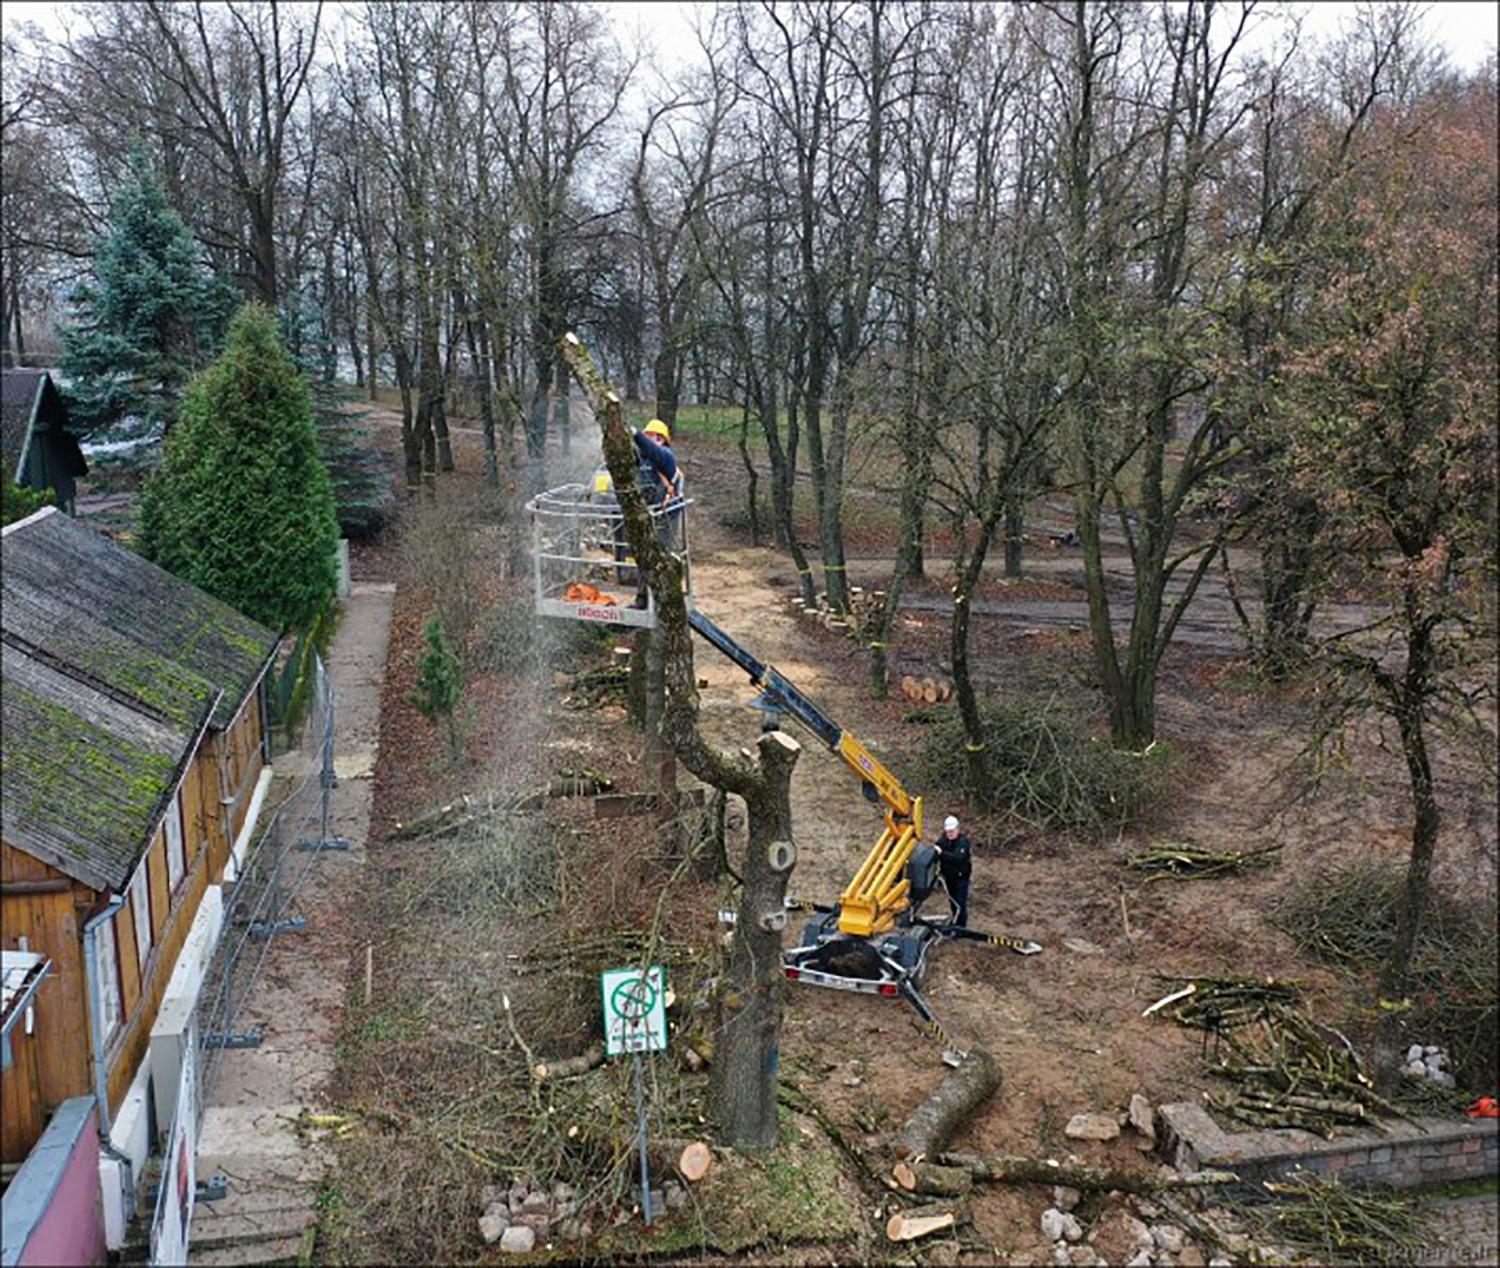 Pilies parke darbuojasi medžių pjovėjai / Dainiaus Vyto nuotr. Medžių pjovėjai darbų ėmėsi parke.